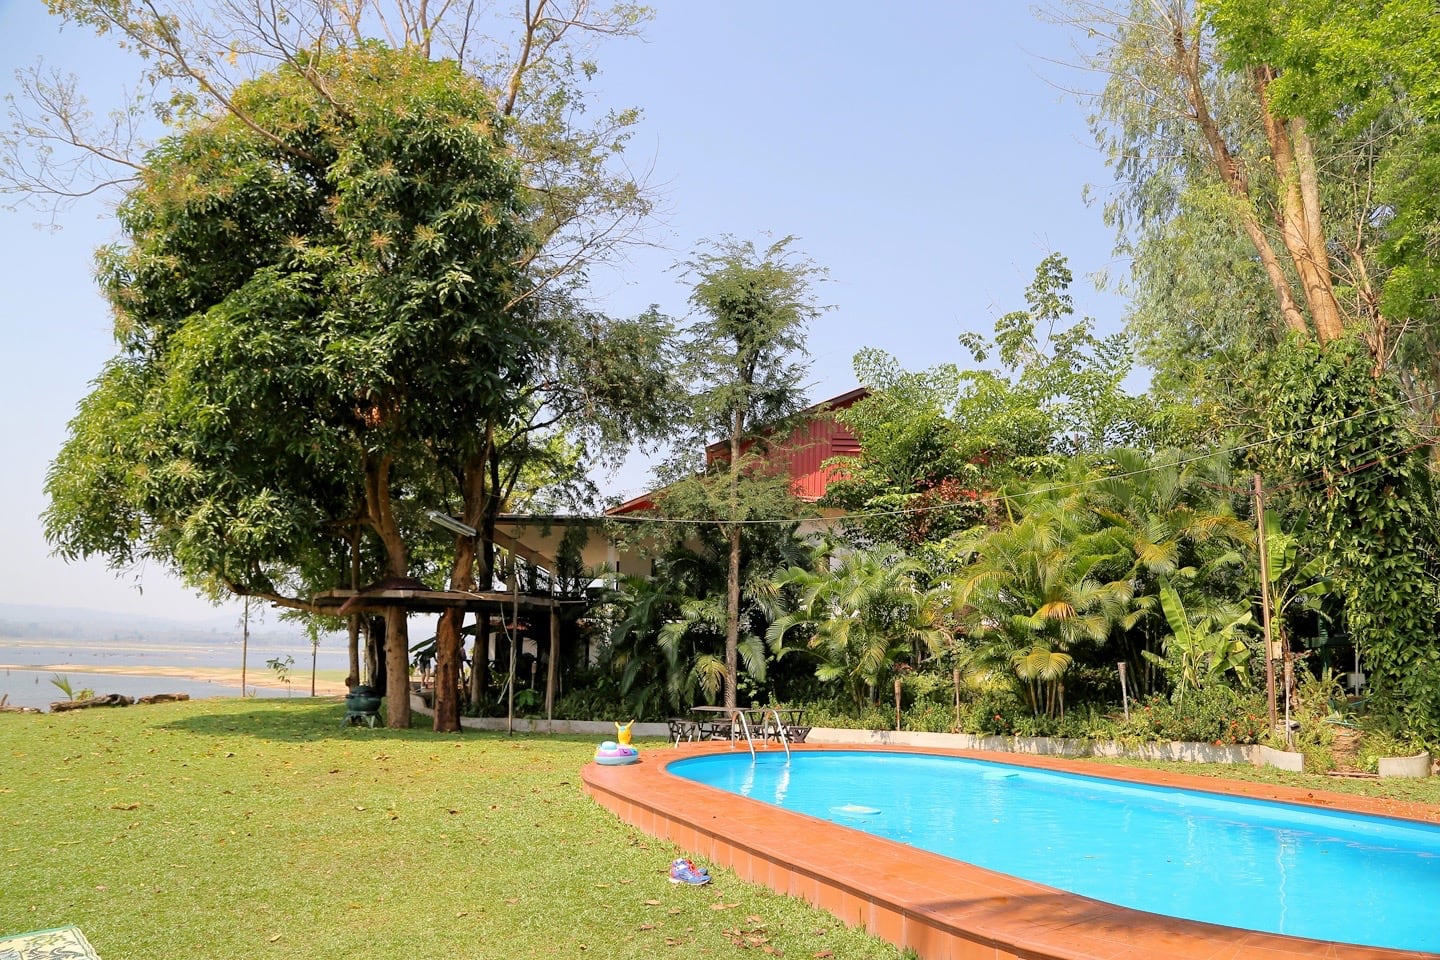 Lao Lake House pool